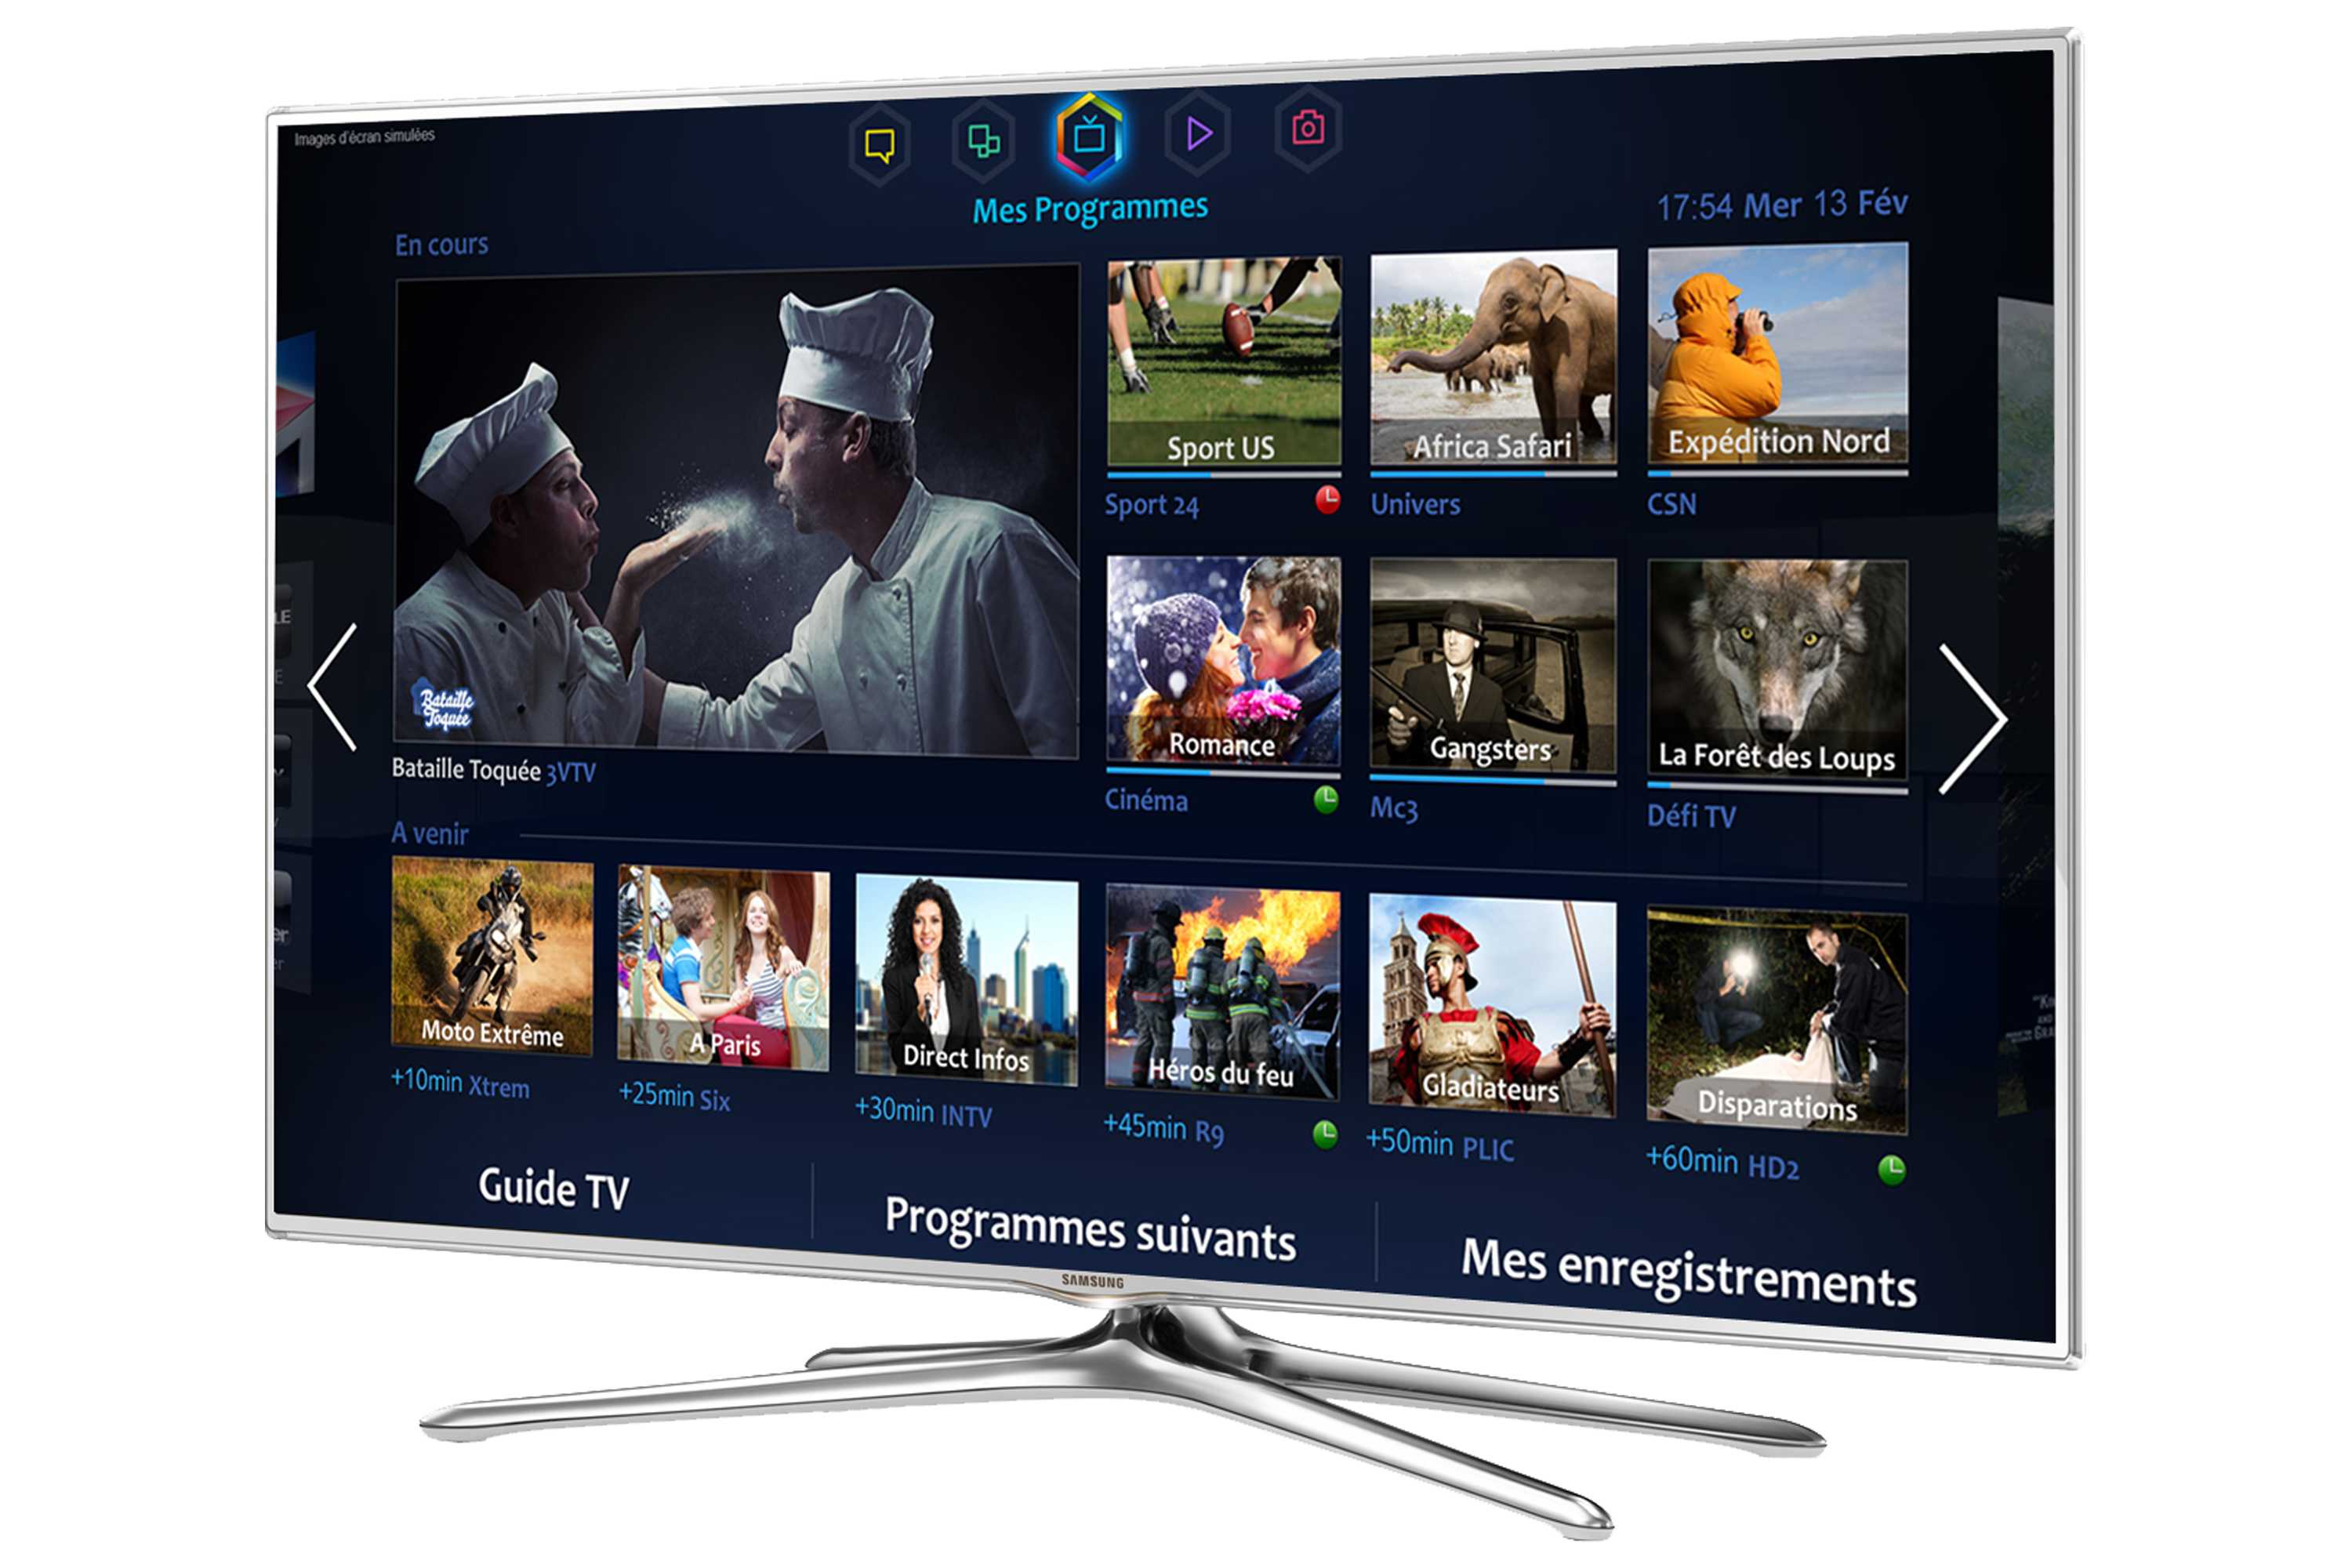 Жк телевизор 55" samsung ue55h6650 — купить, цена и характеристики, отзывы